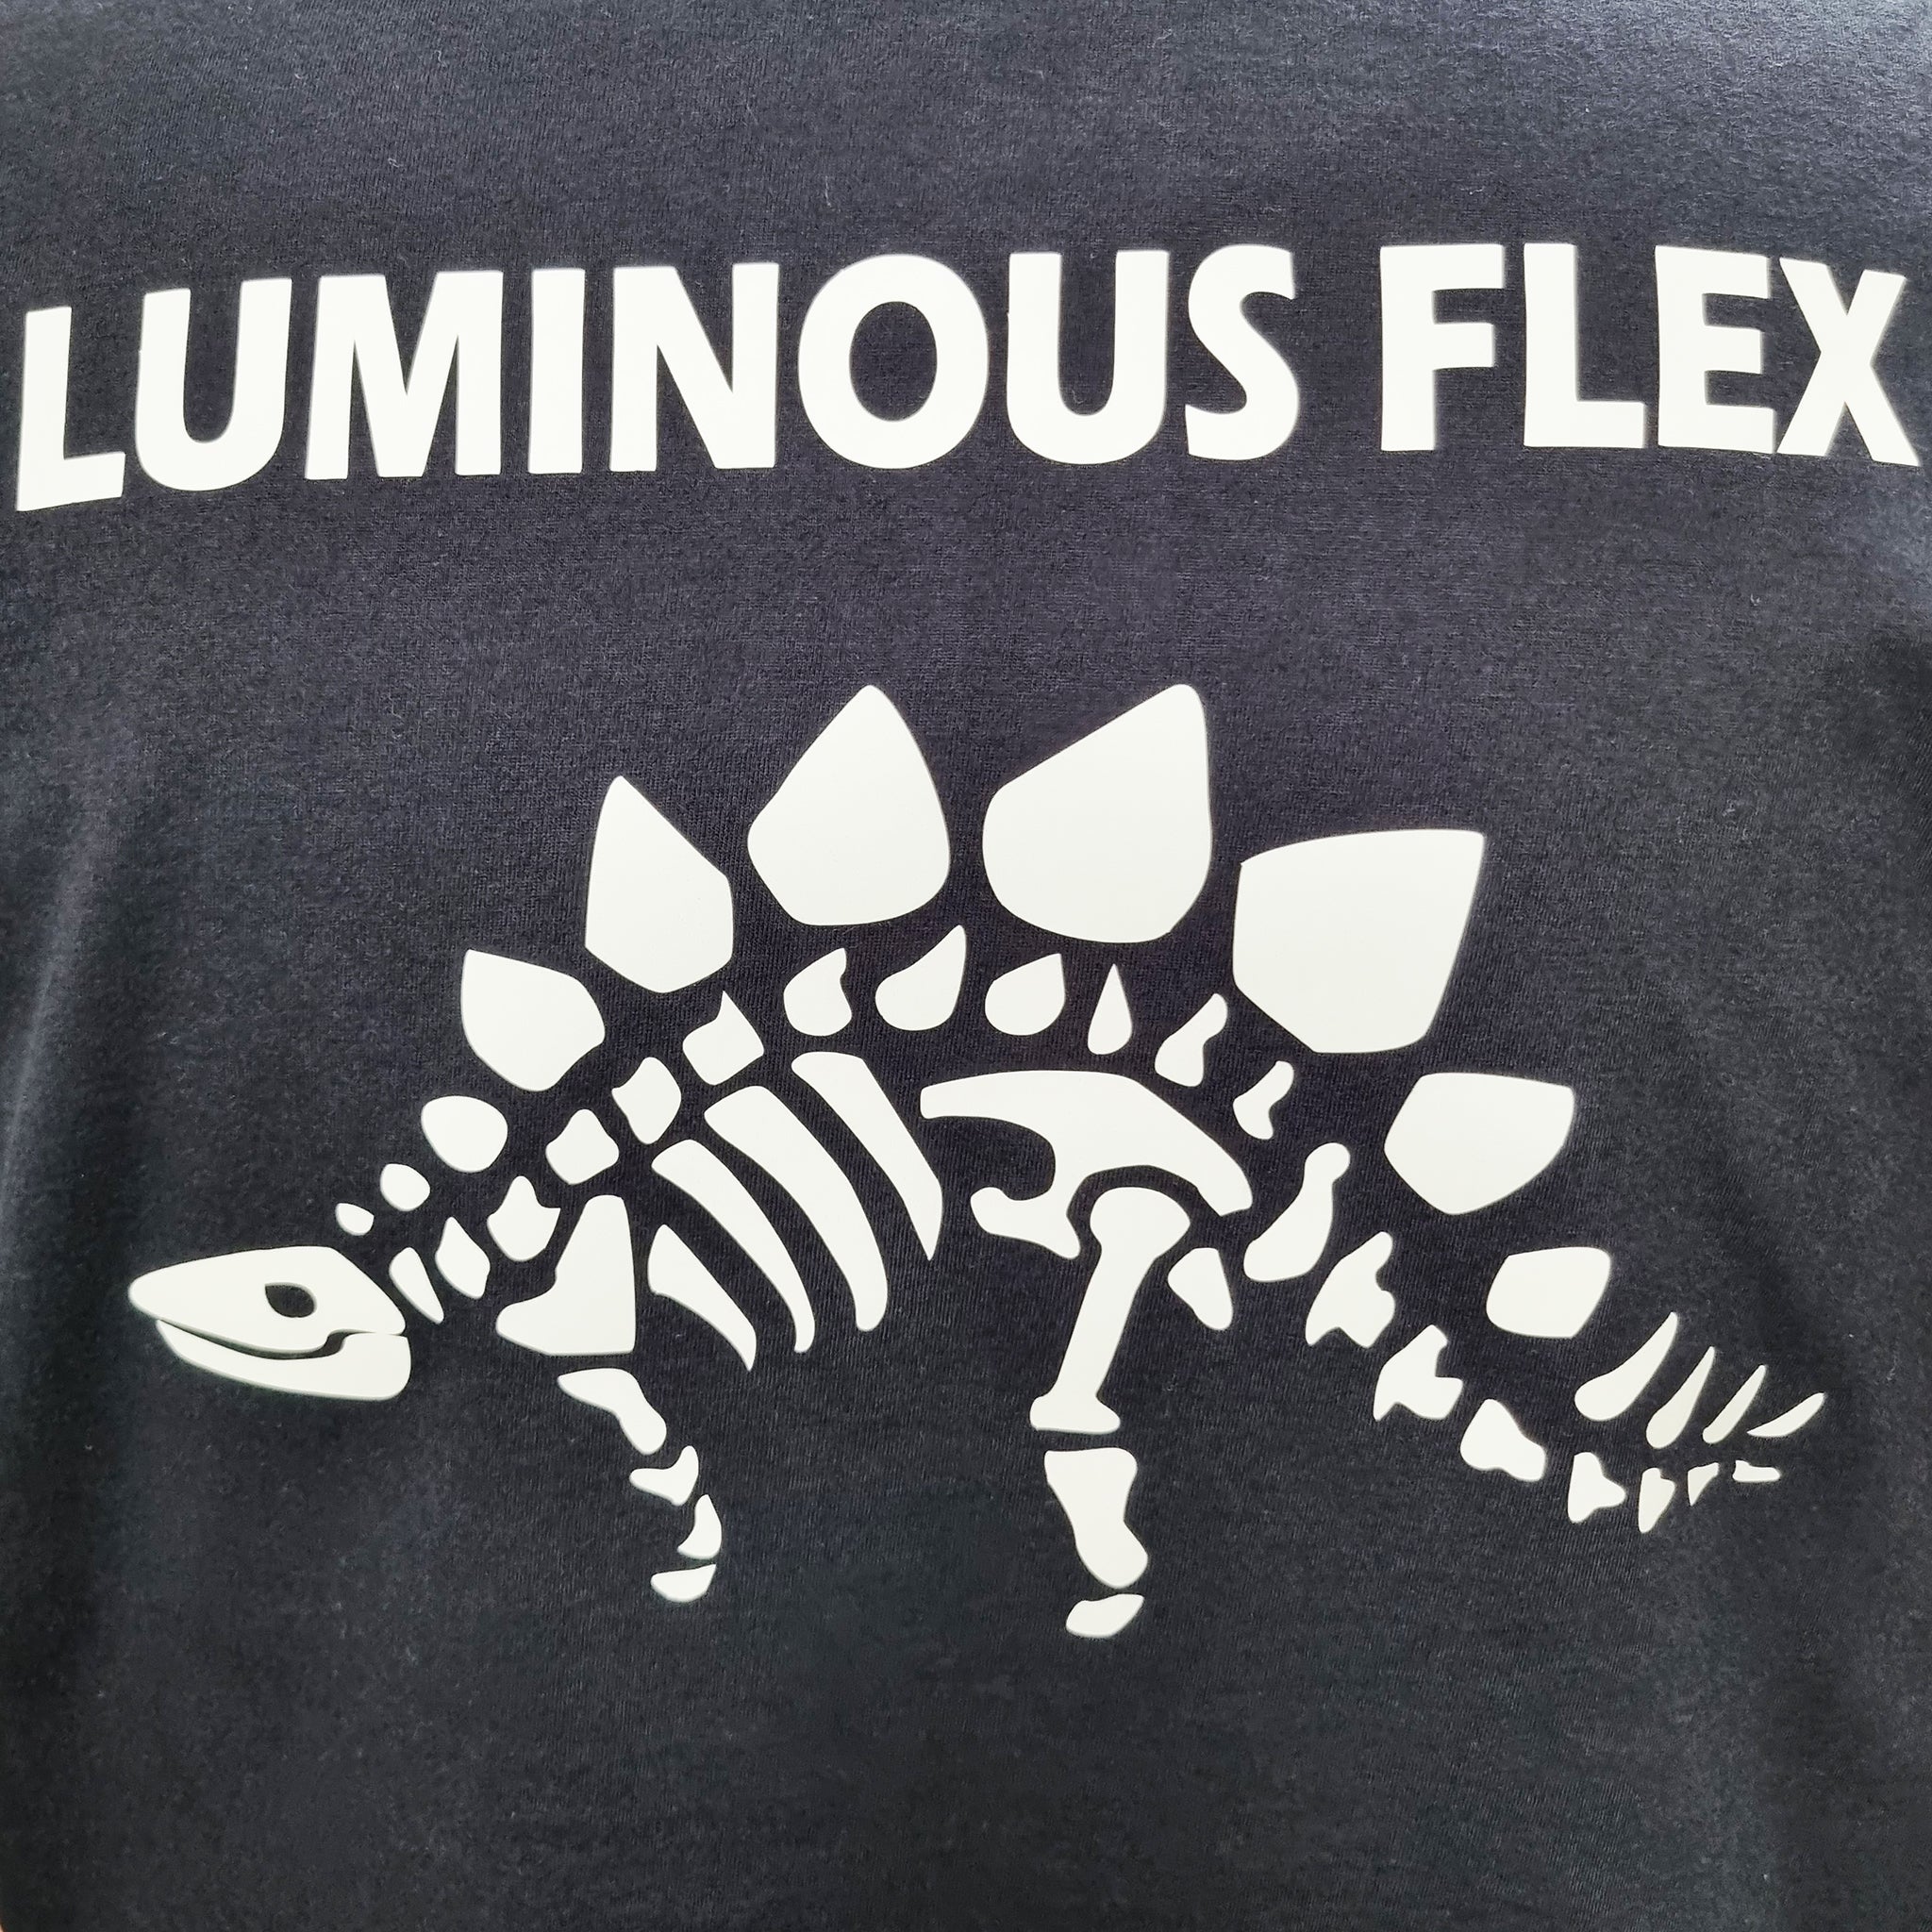 LUMINOUS FLEX (GLOW IN THE DARK)